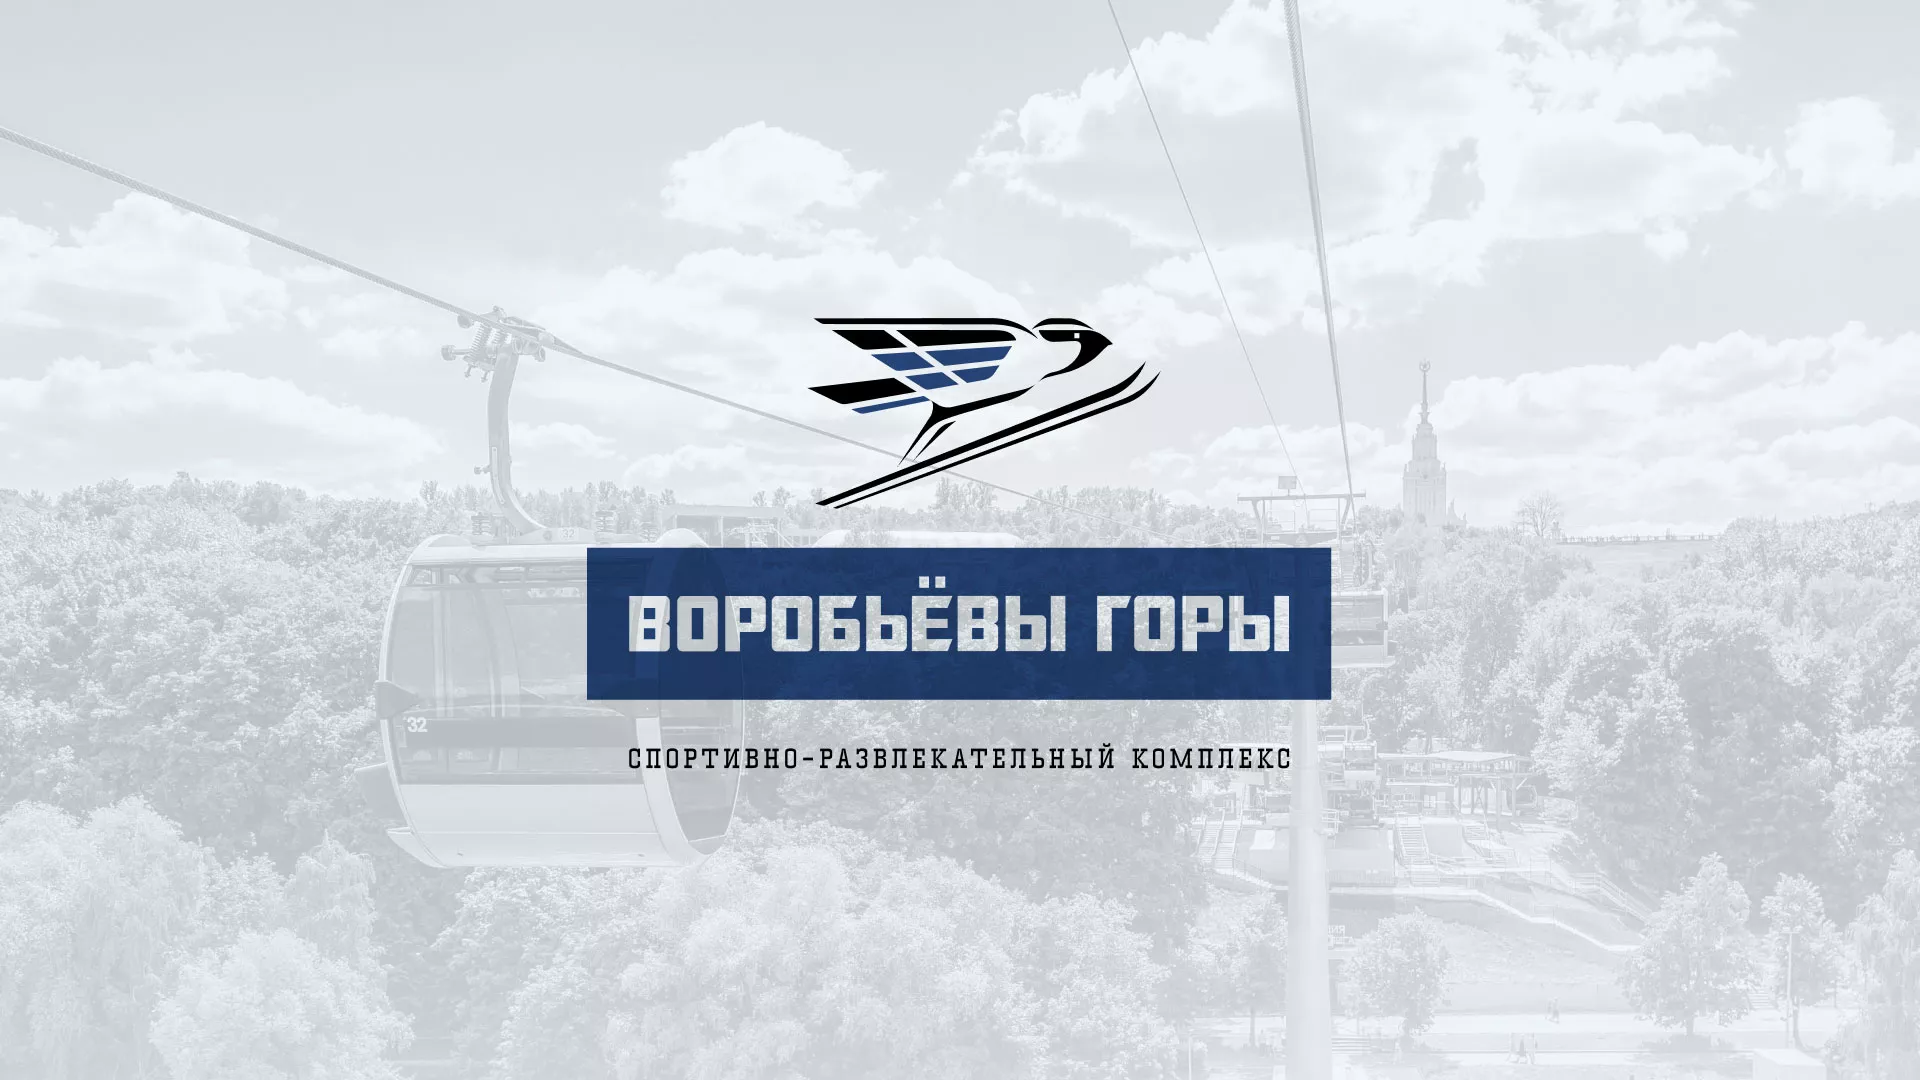 Разработка сайта в Севске для спортивно-развлекательного комплекса «Воробьёвы горы»